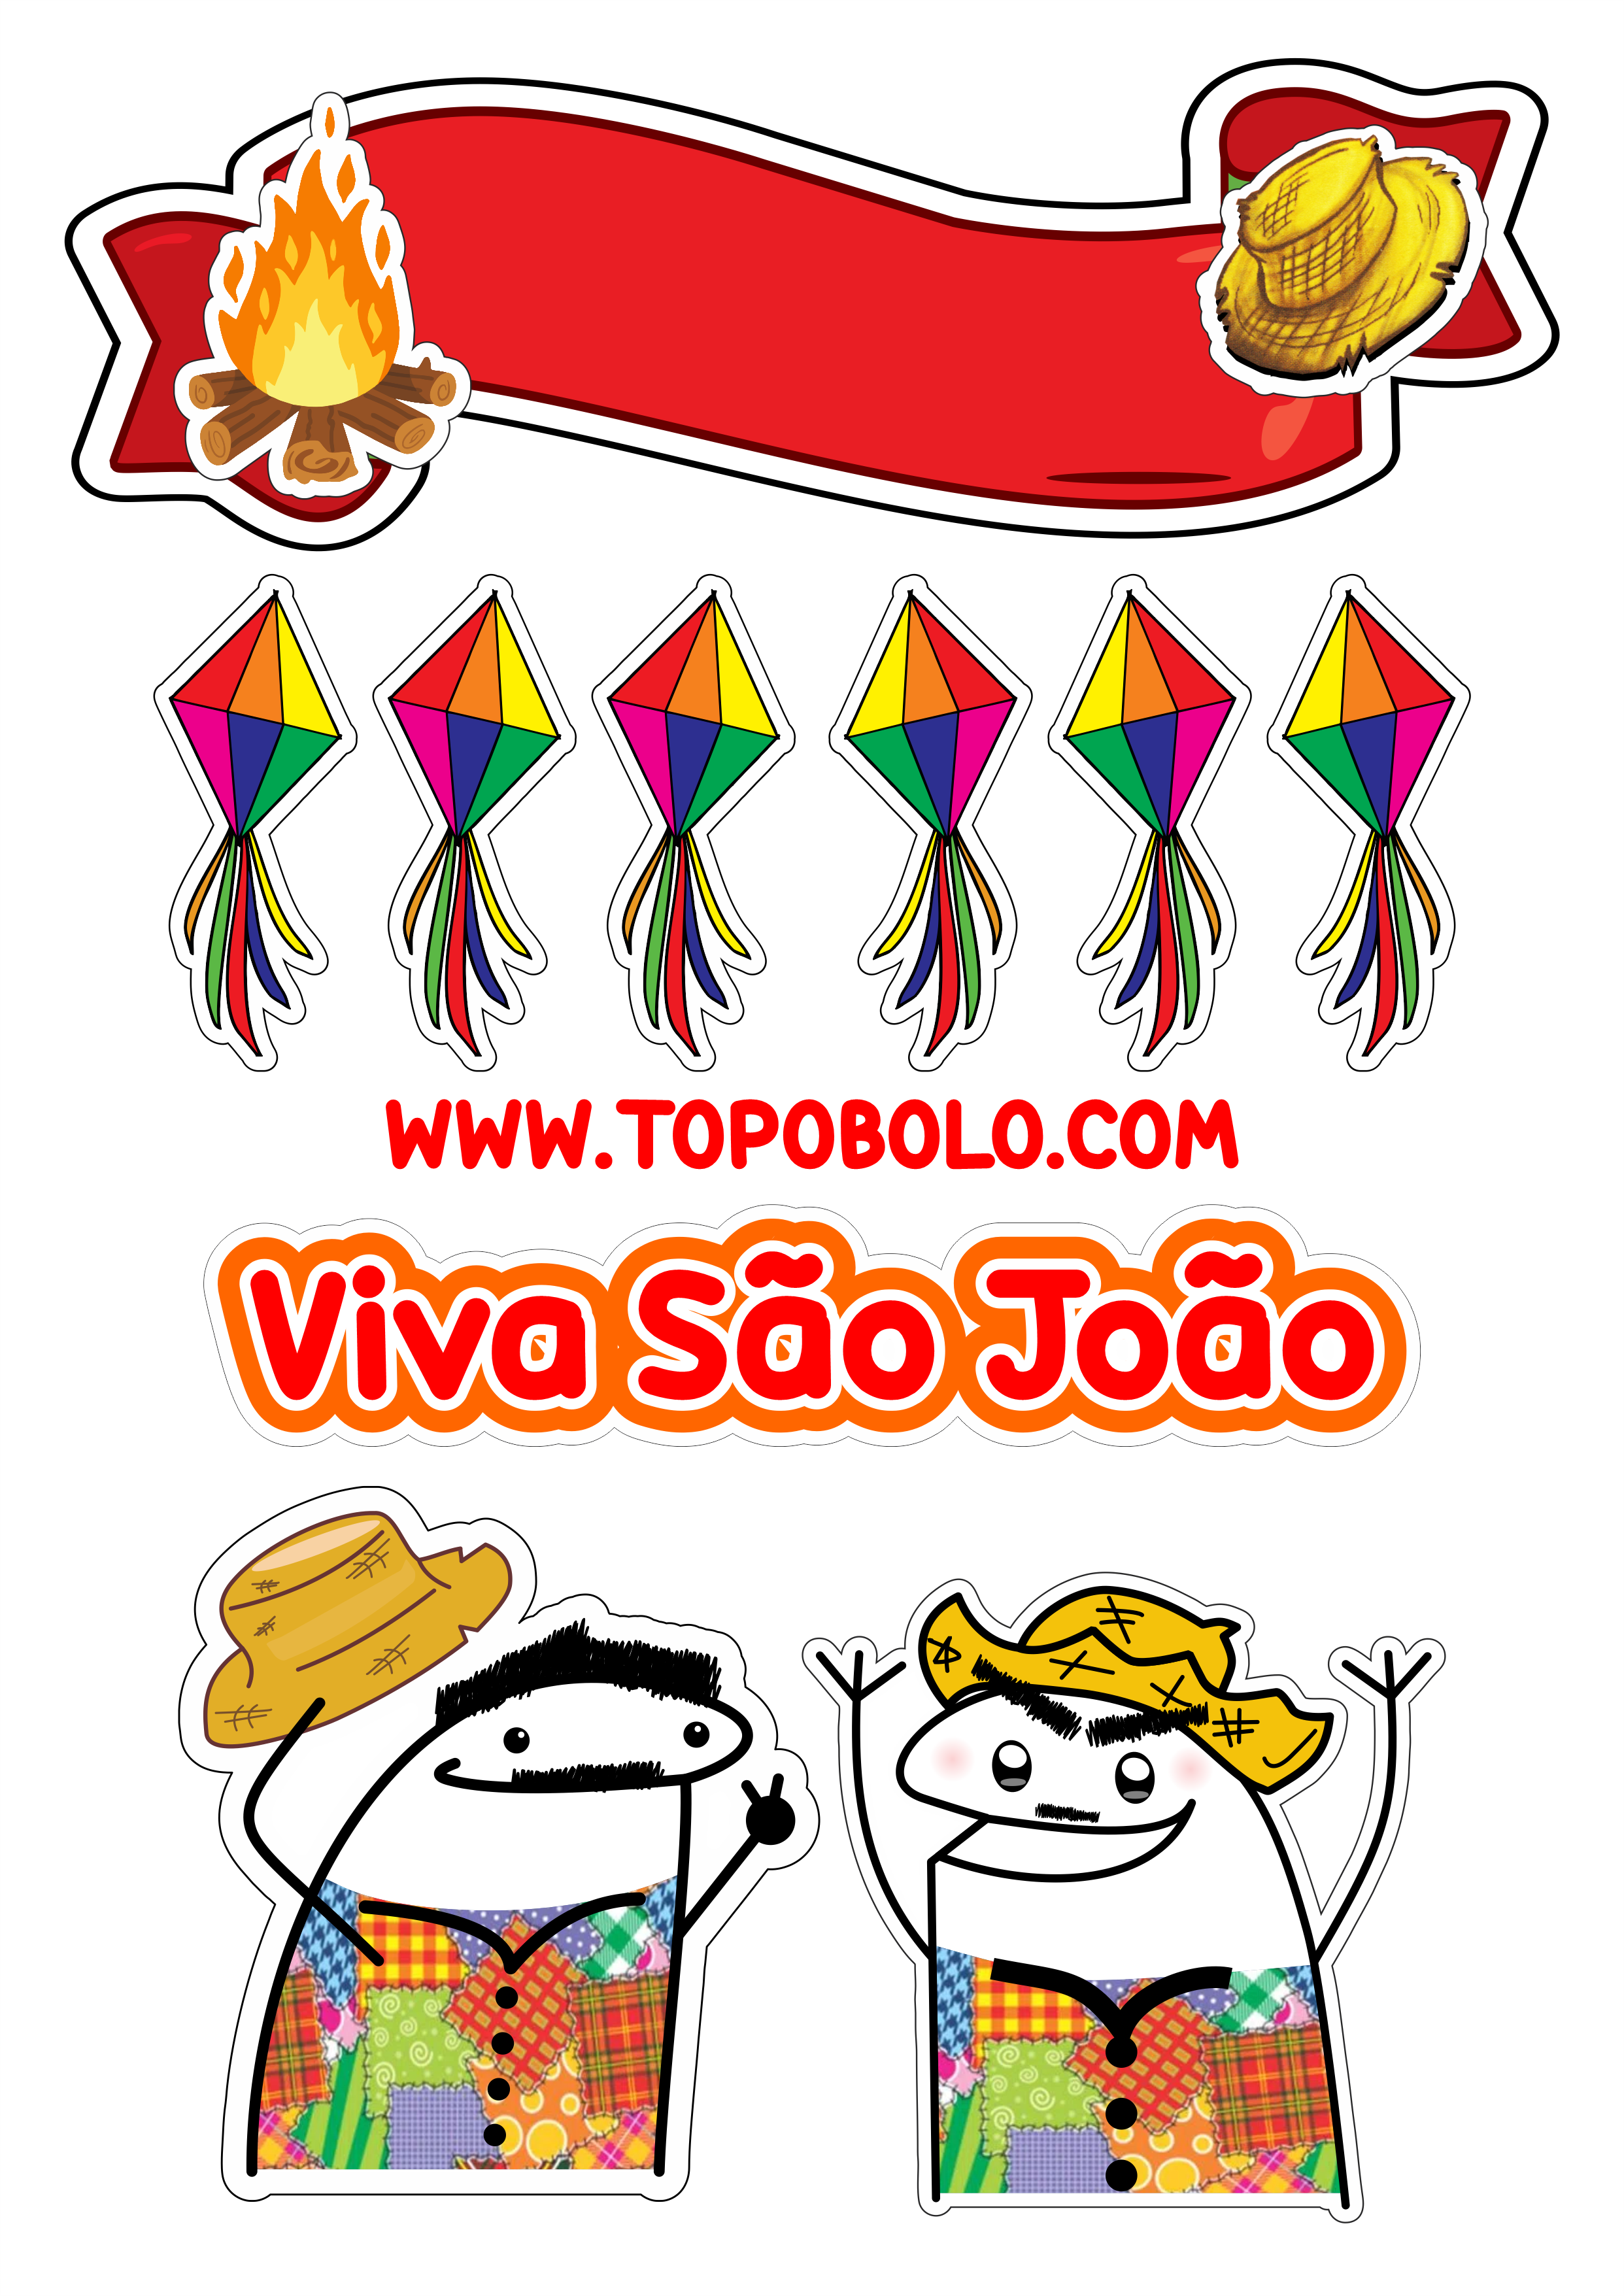 Topo de bolo para imprimir flork festa junina viva São João quadrilha caipira balões decoração de festa aniversário png